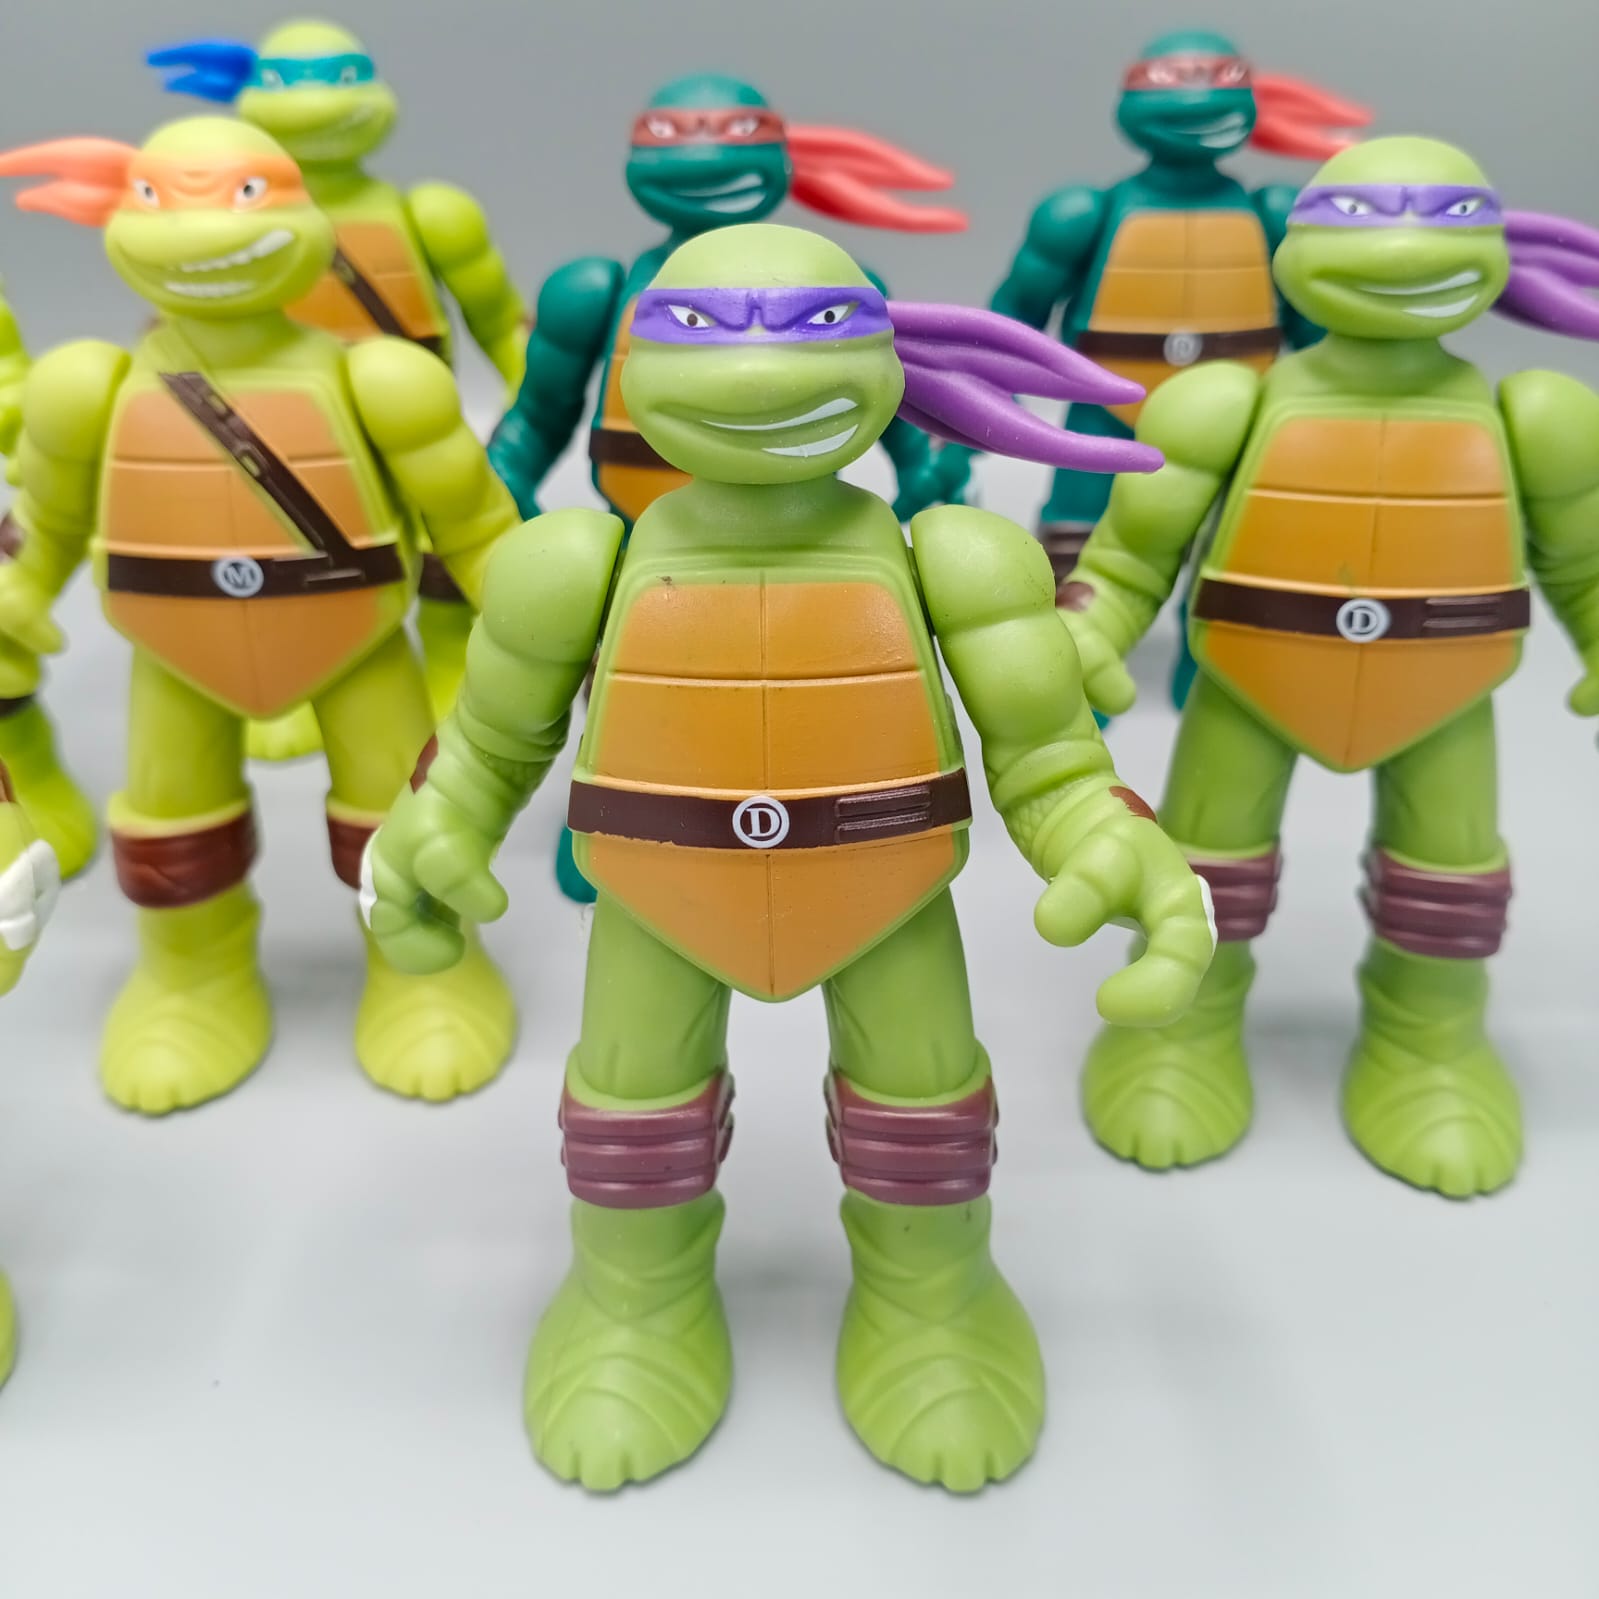 Teenage Mutant Ninja Turtles Action Figure Anime Model For Kids